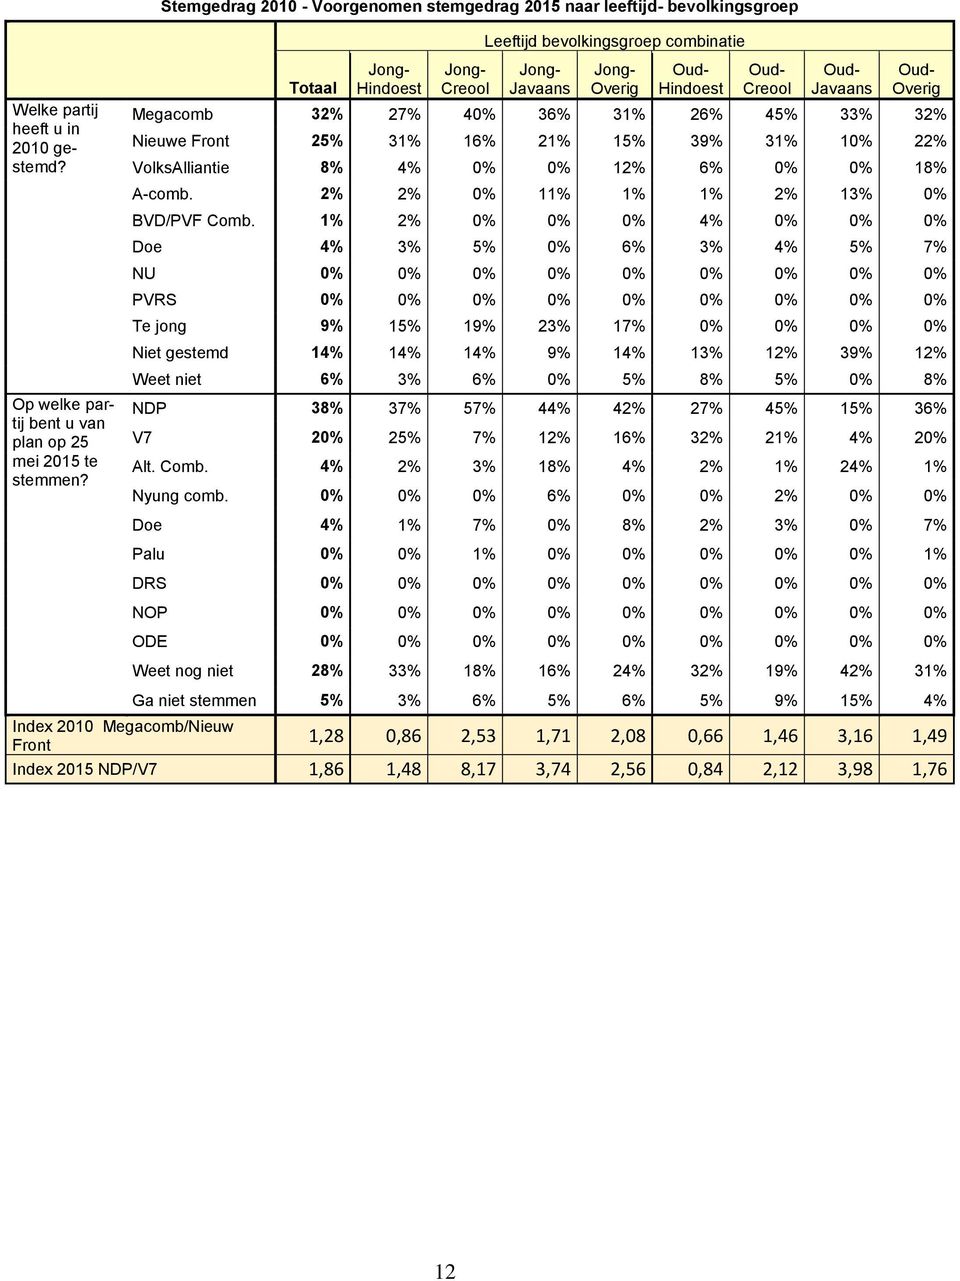 Oud- Hindoest Oud- Creool Oud- Javaans Oud- Overig Megacomb 32% 27% 40% 36% 31% 26% 45% 33% 32% Nieuwe Front 25% 31% 16% 21% 15% 39% 31% 10% 22% VolksAlliantie 8% 4% 0% 0% 12% 6% 0% 0% 18% A-comb.